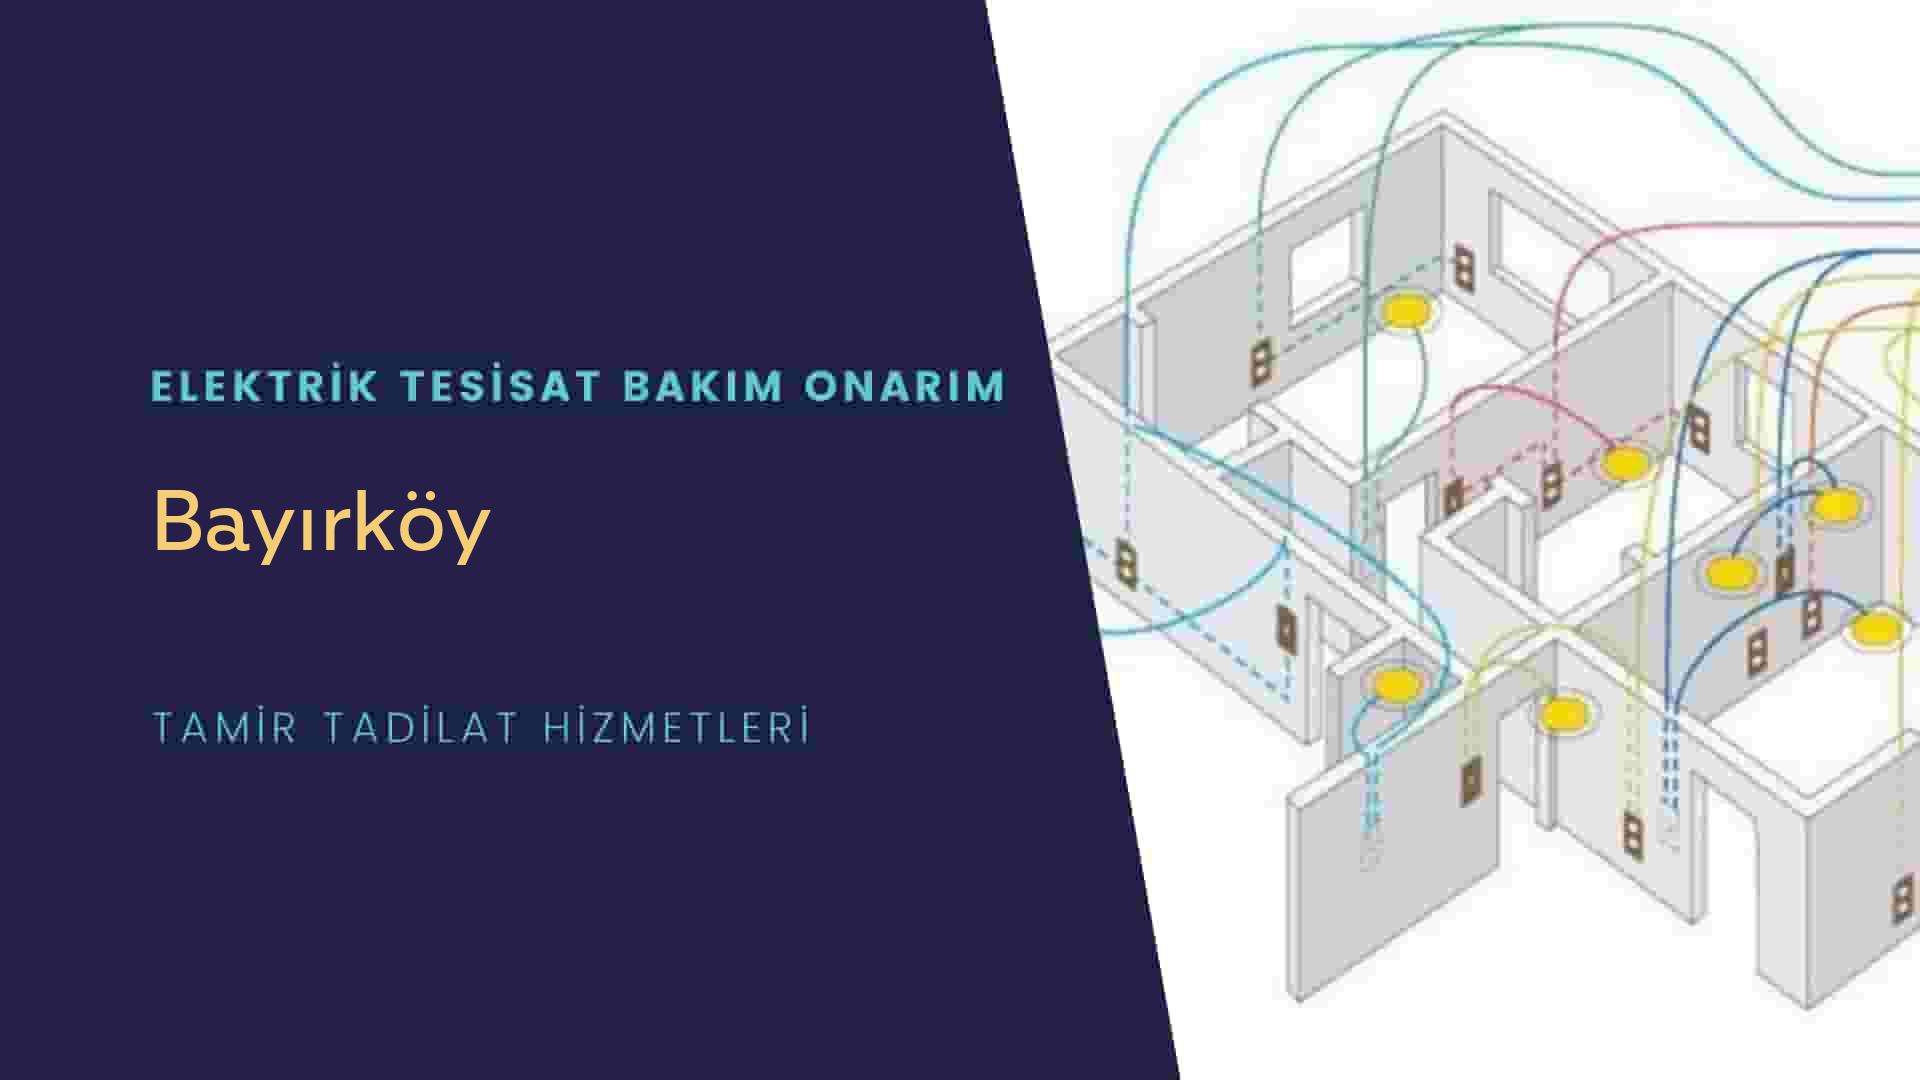 Bayırköy'de elektrik tesisatı ustalarımı arıyorsunuz doğru adrestenizi Bayırköy elektrik tesisatı ustalarımız 7/24 sizlere hizmet vermekten mutluluk duyar.